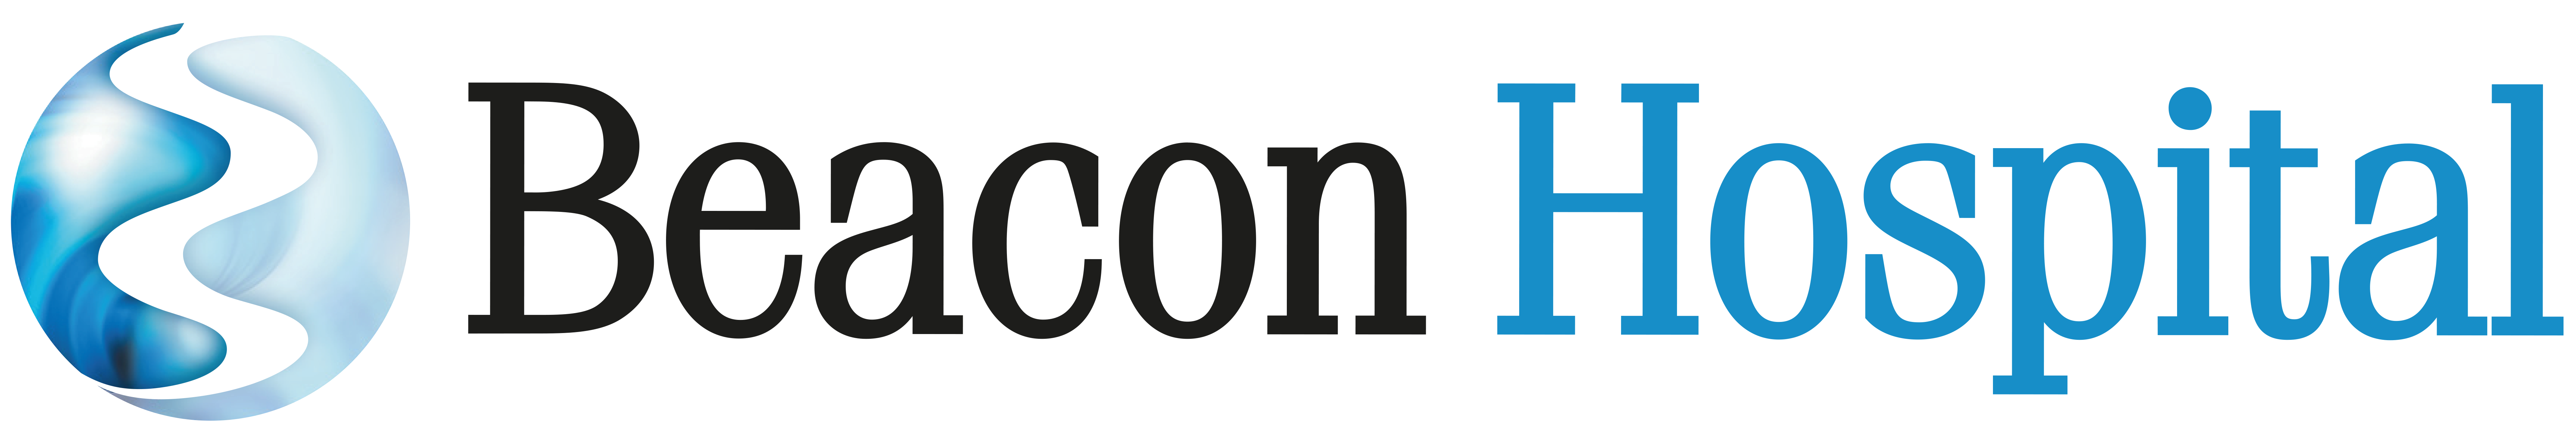 Beacon-Hospital-Bold-Logo